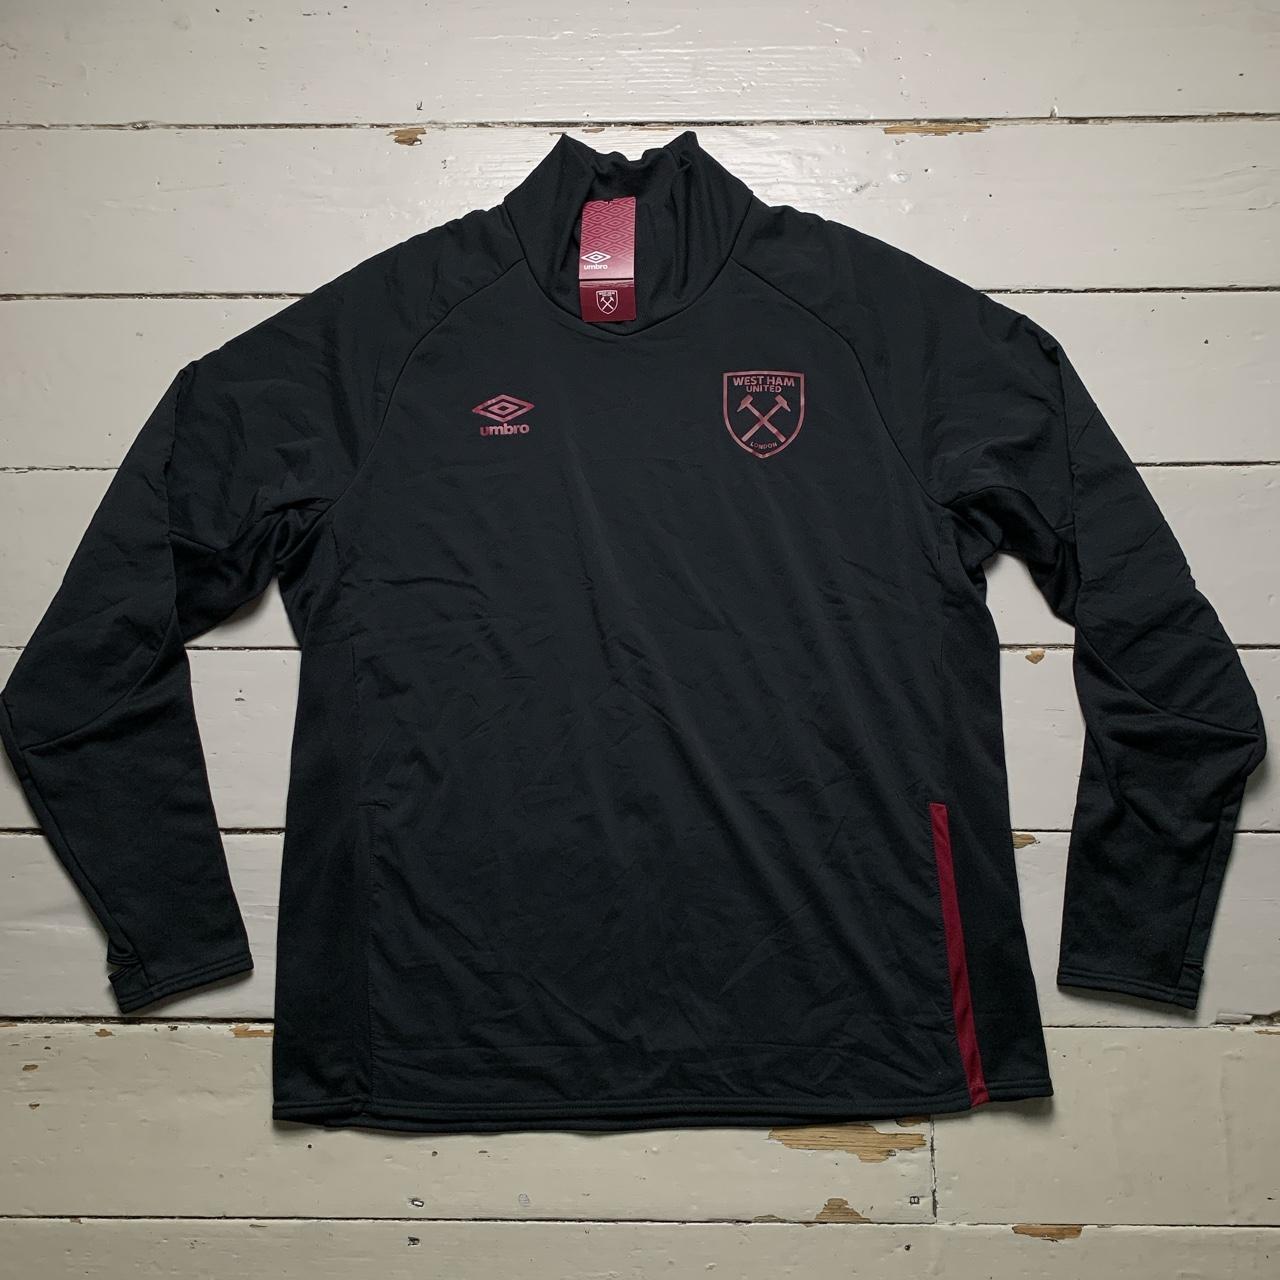 West Ham United Football Umbro Tracksuit Jumper Jacket